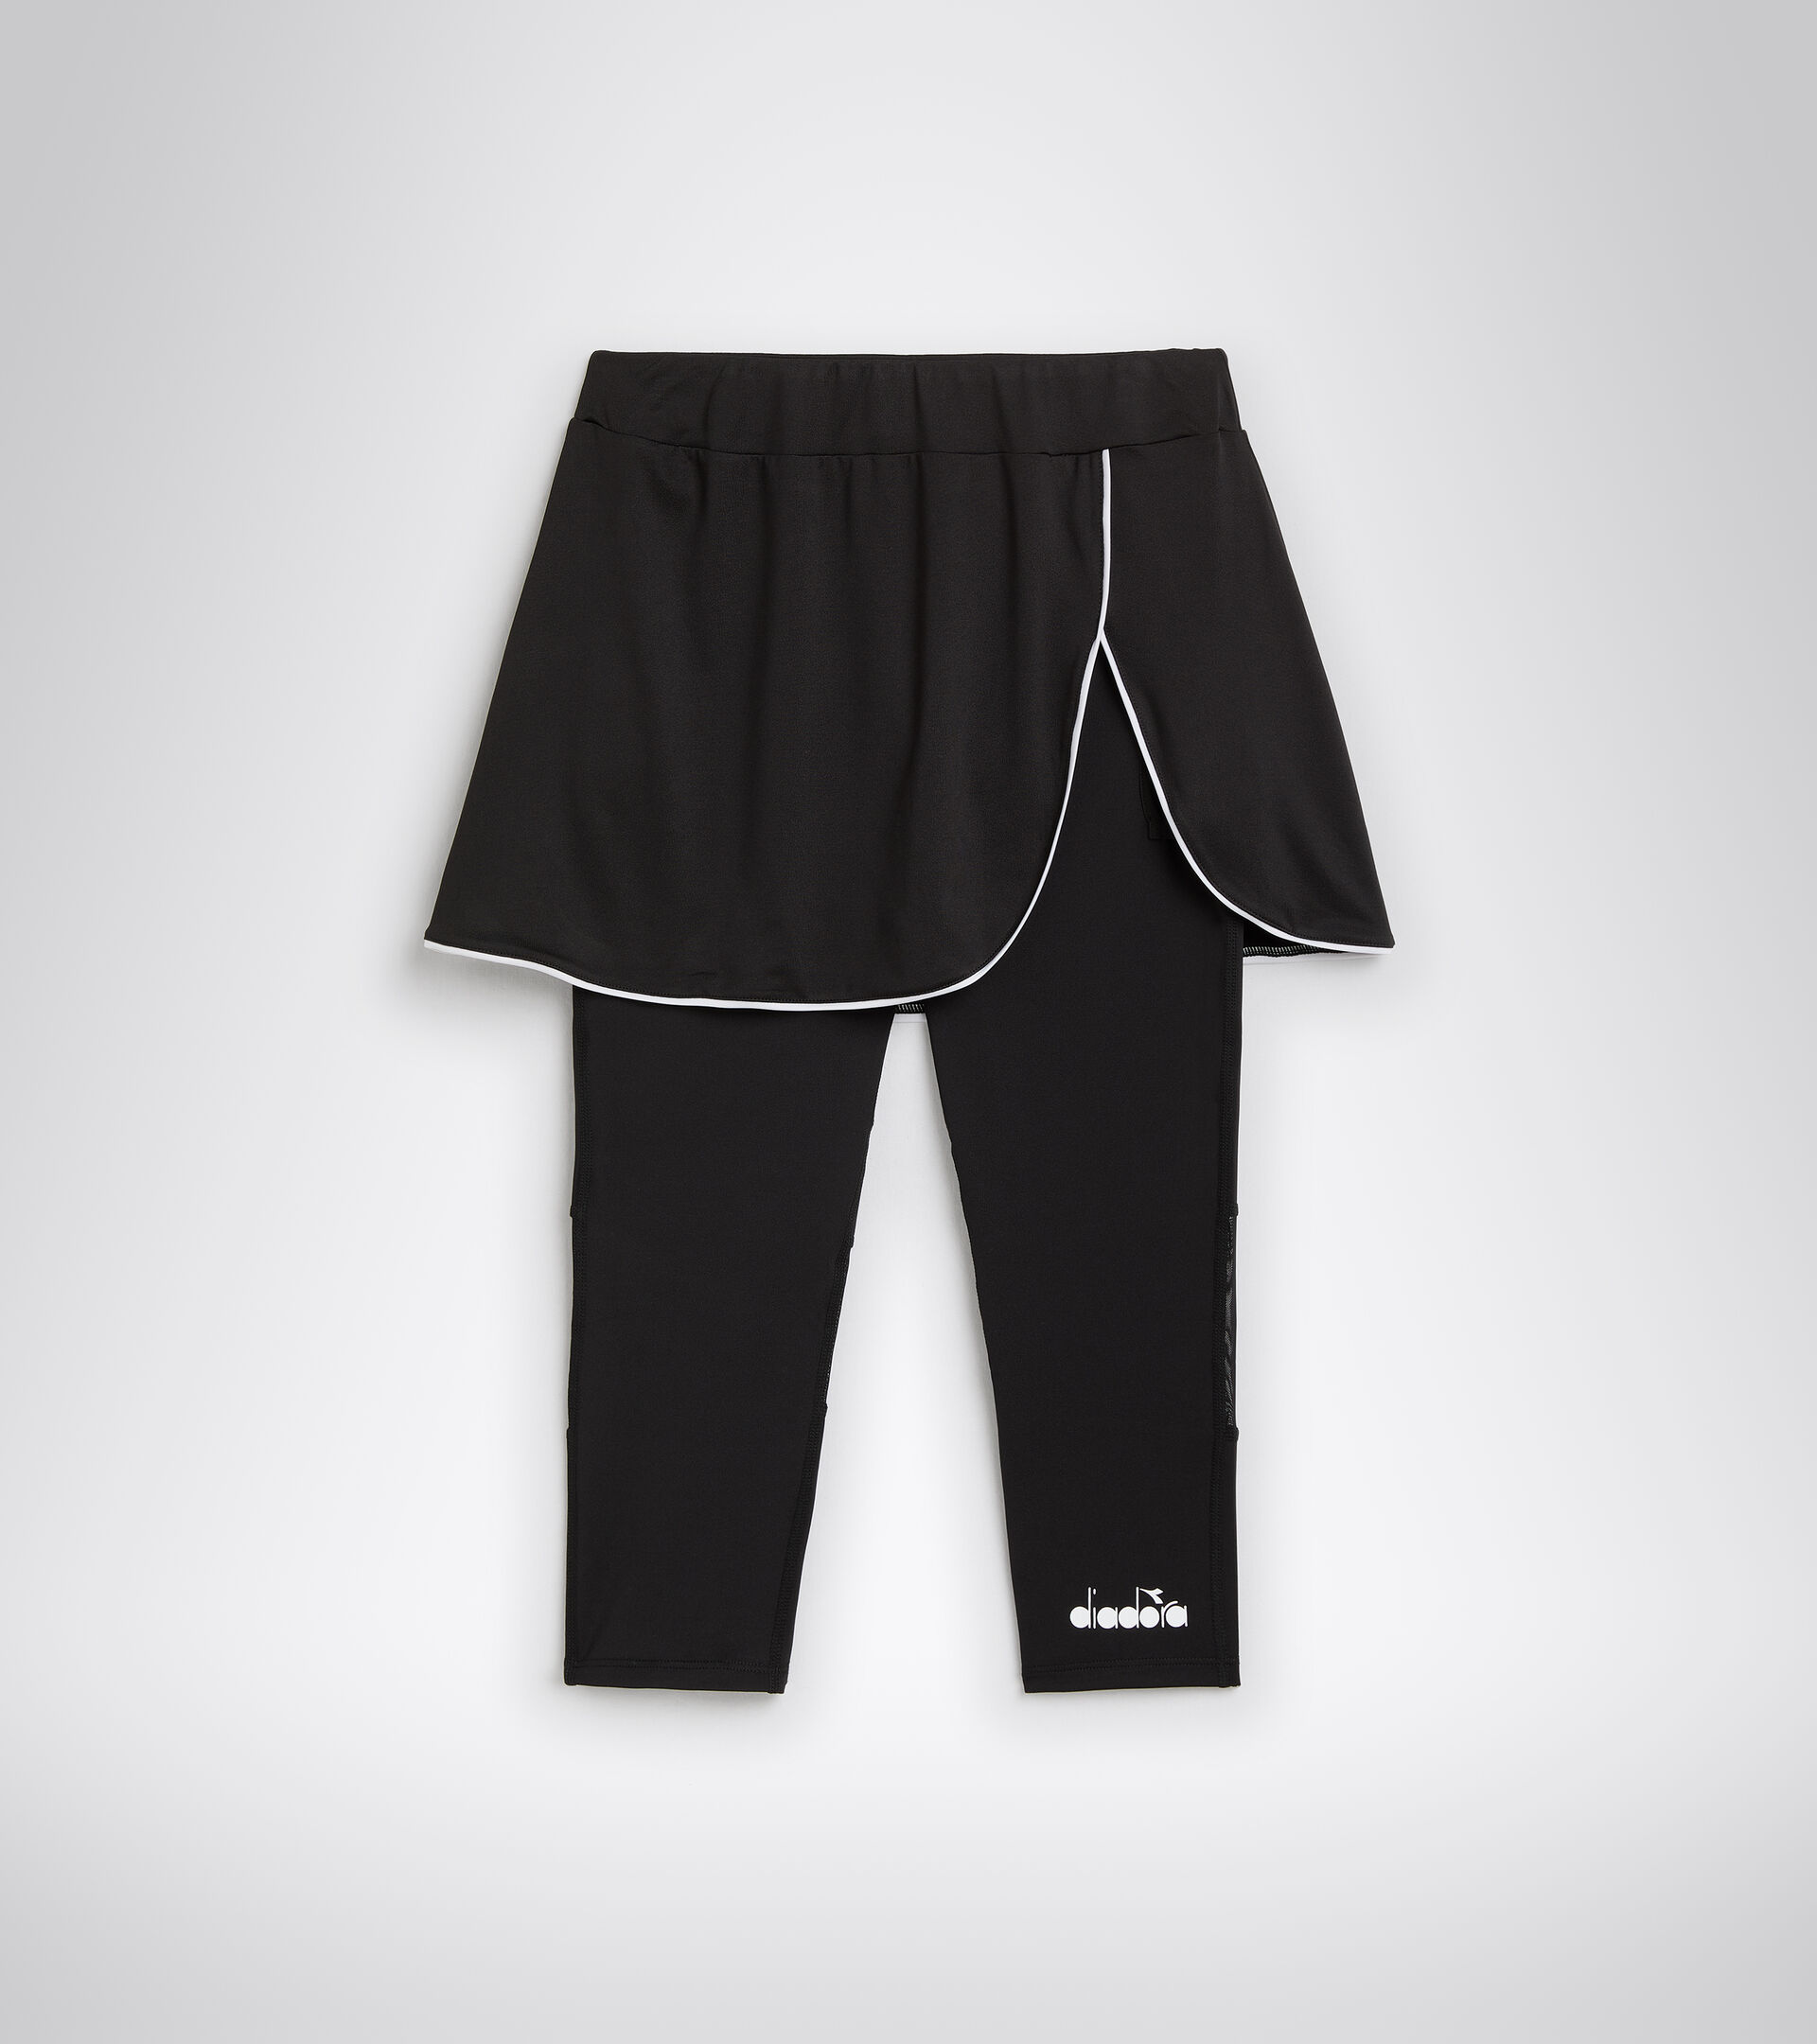 L. POWER Online Polyester - US SKIRT skirt - Store tennis Diadora Women